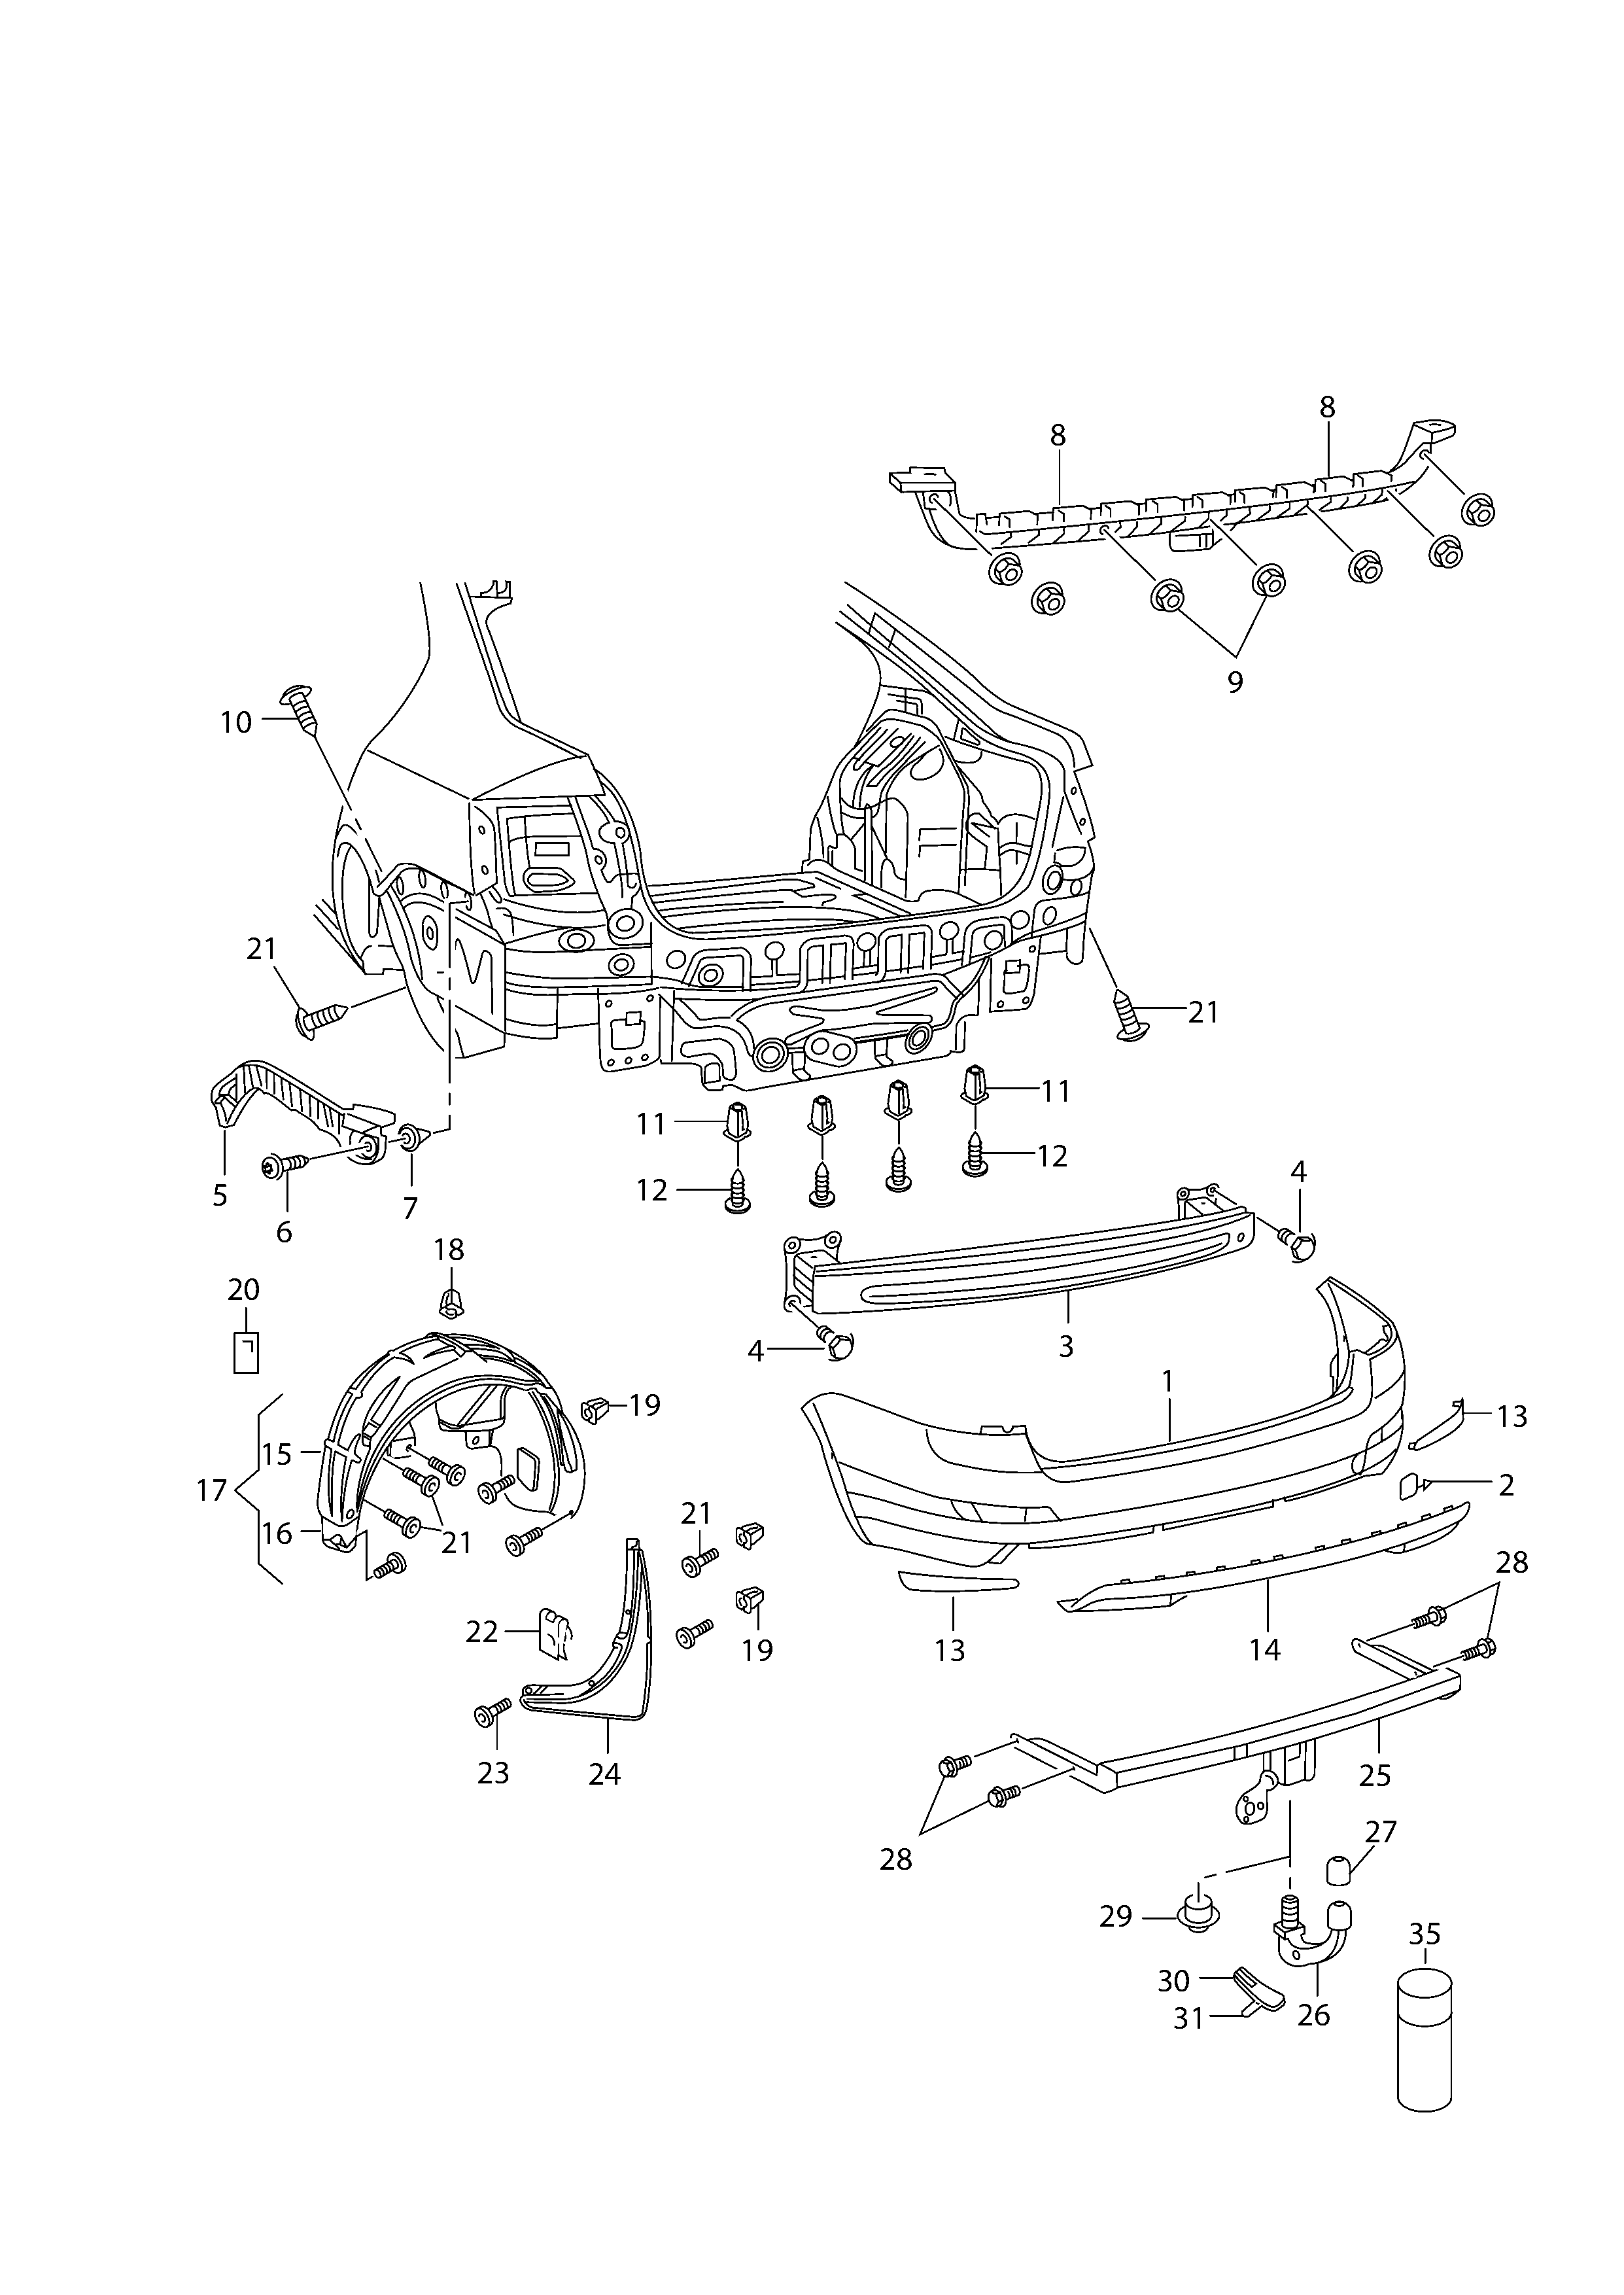 pare-chocscoquille passage roue-plastiquAttelage de remorque (rotule) ar - Octavia - oct